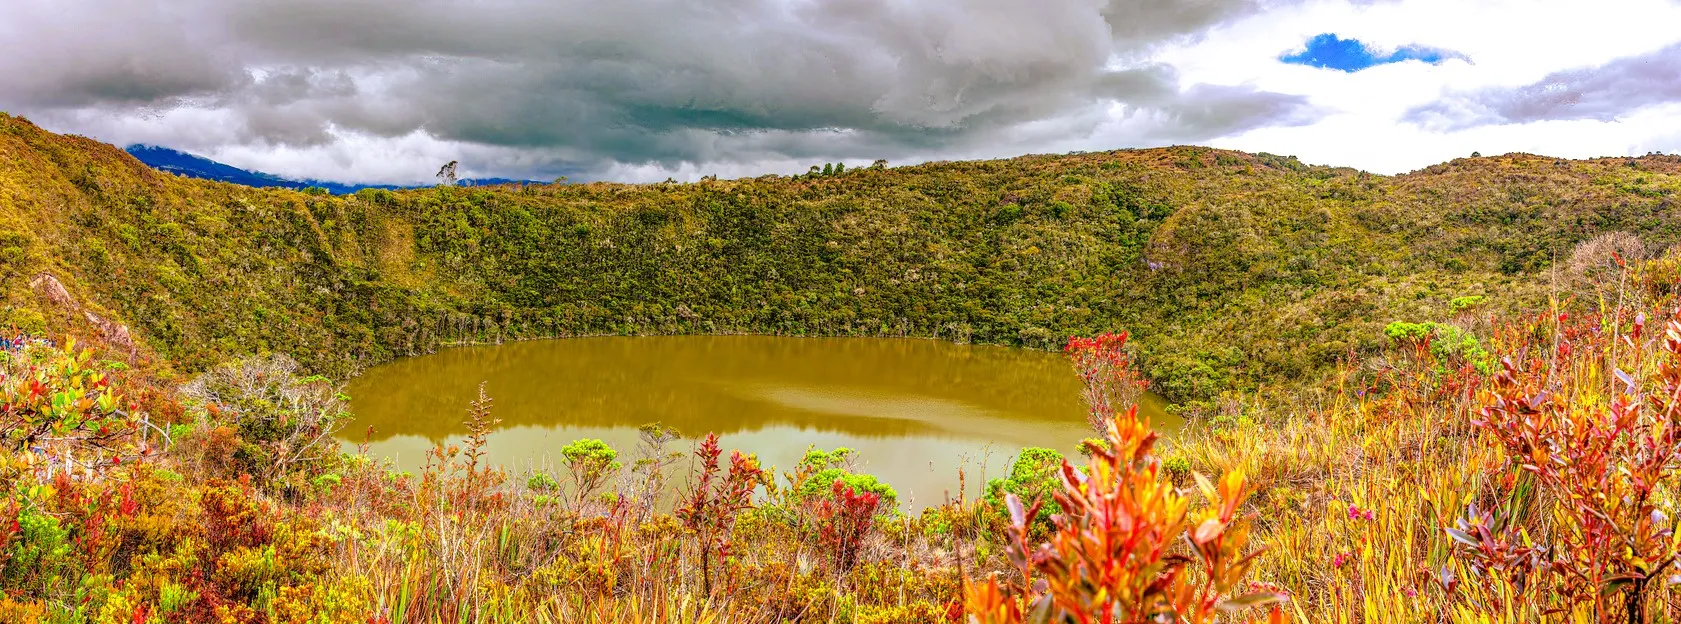 La Laguna de Guatavita en Colombie © iStock / Devasahayam Chandra Dhas